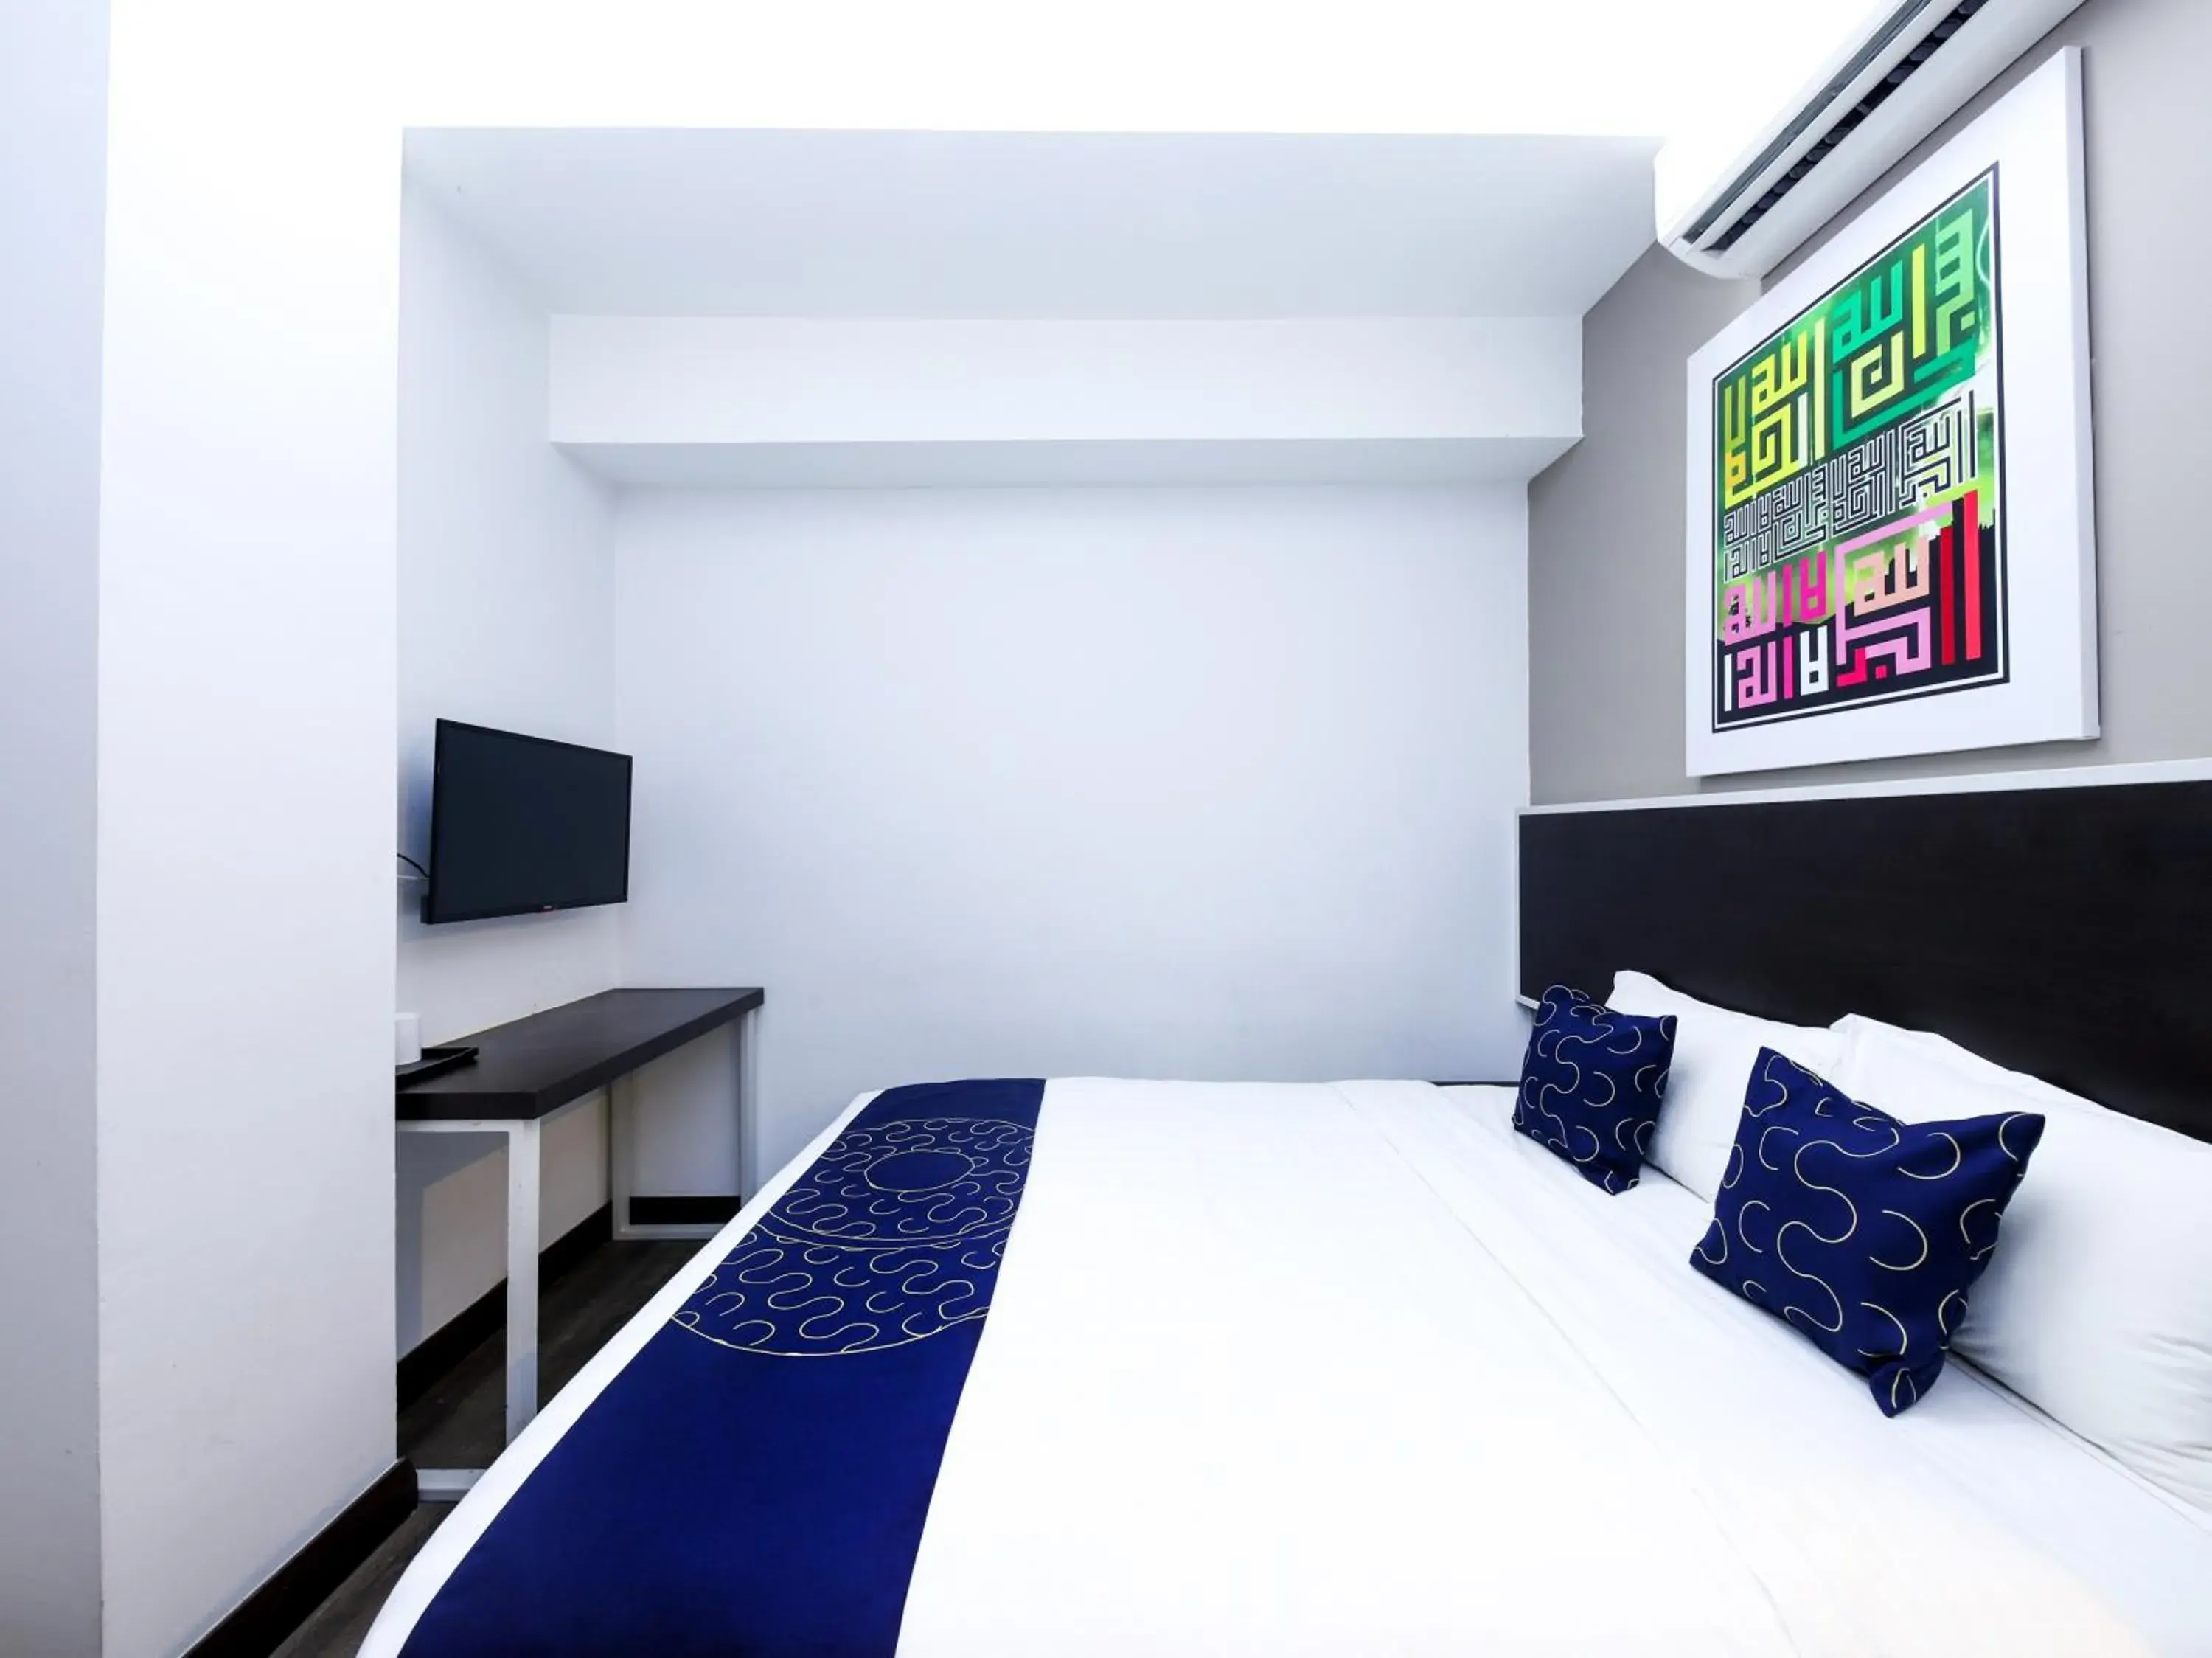 Bedroom in Hotel Midaris (Syariah) Kuala Lumpur